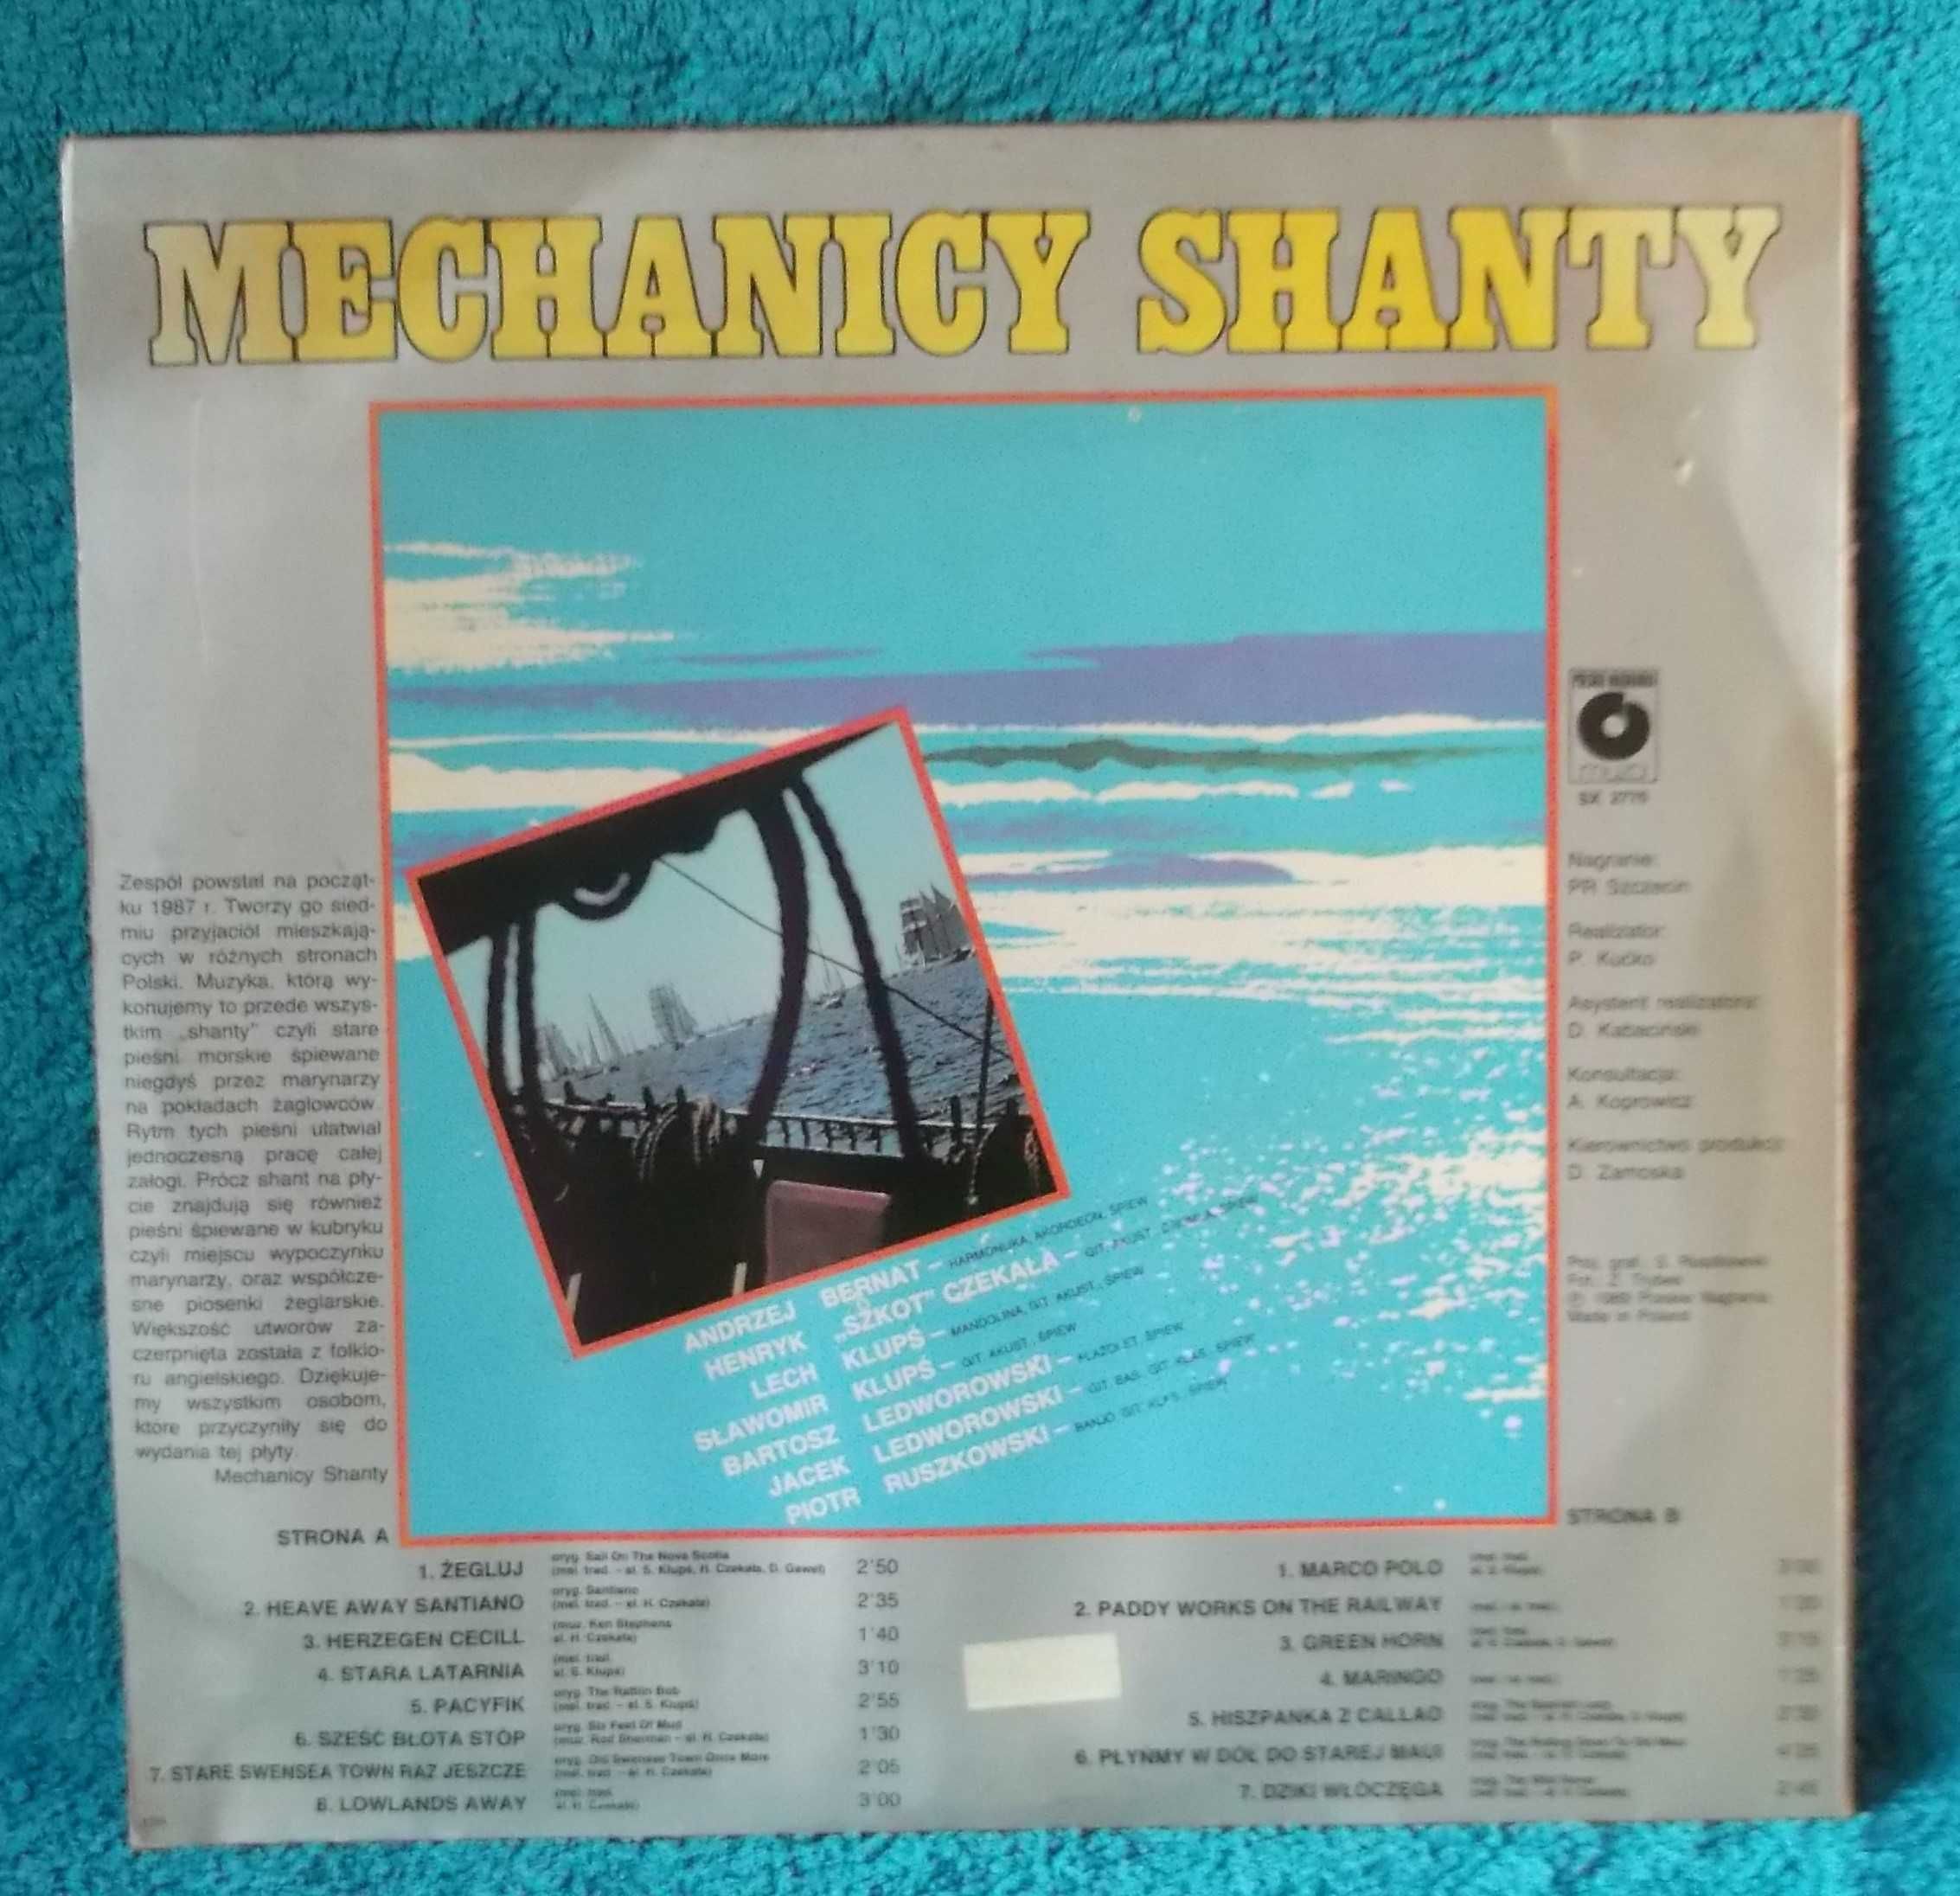 Płyta winylowa "Mechanicy Shanty". 1989 r.